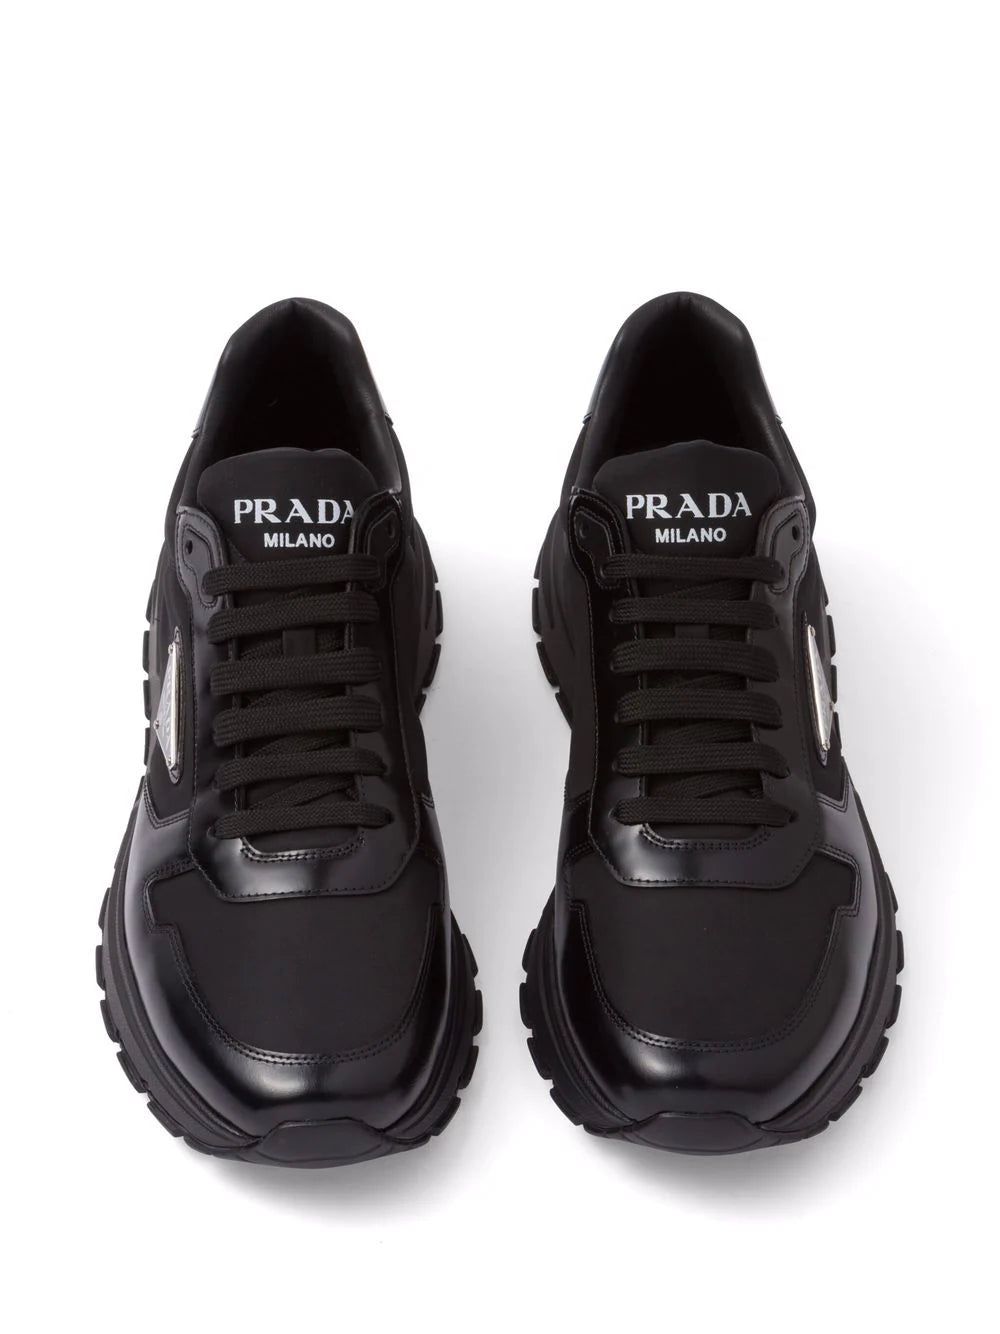 Prada Re-Nylon PRAX 1 sneakers